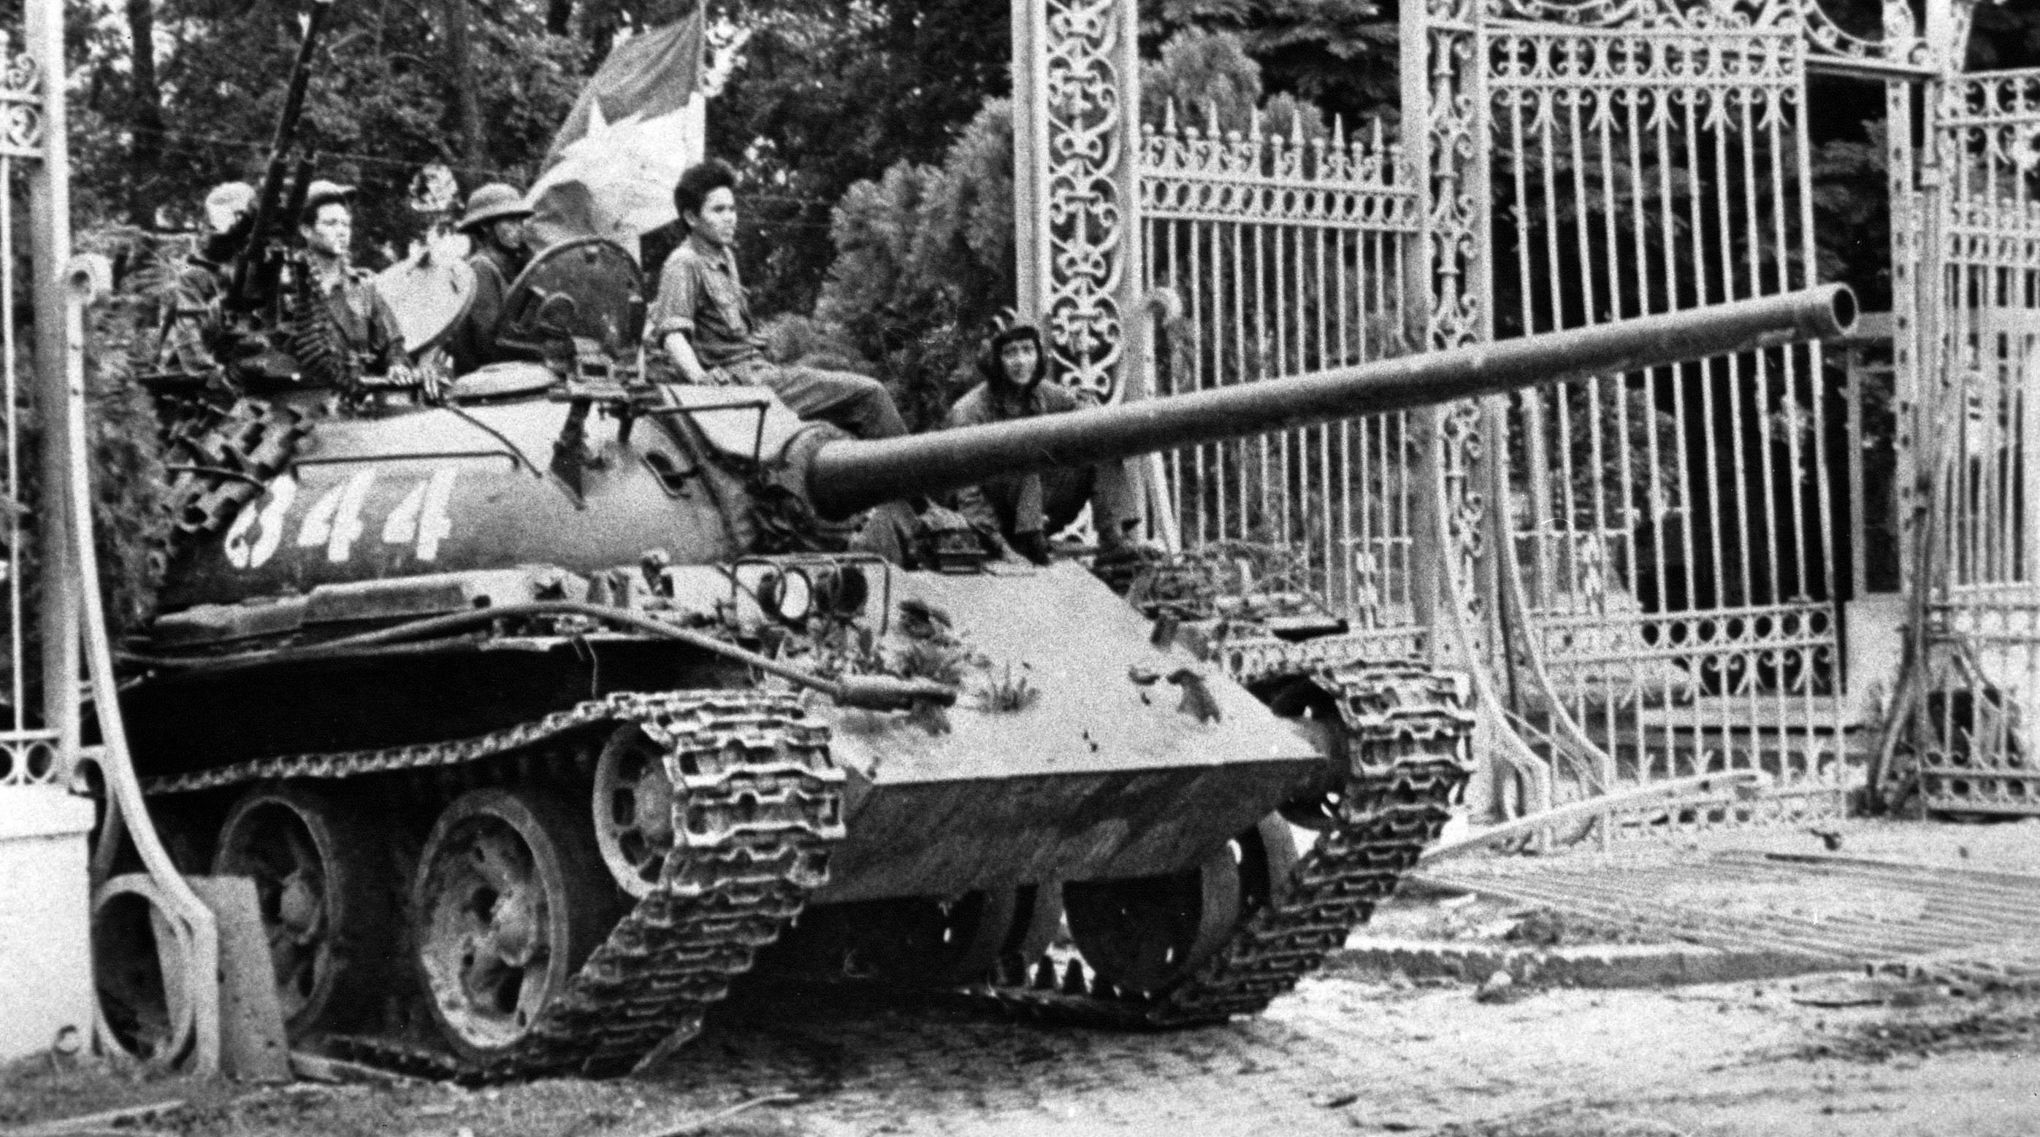 Le 30 Avril 1975 La Chute De Saigon Met Fin A La Guerre Du Vietnam